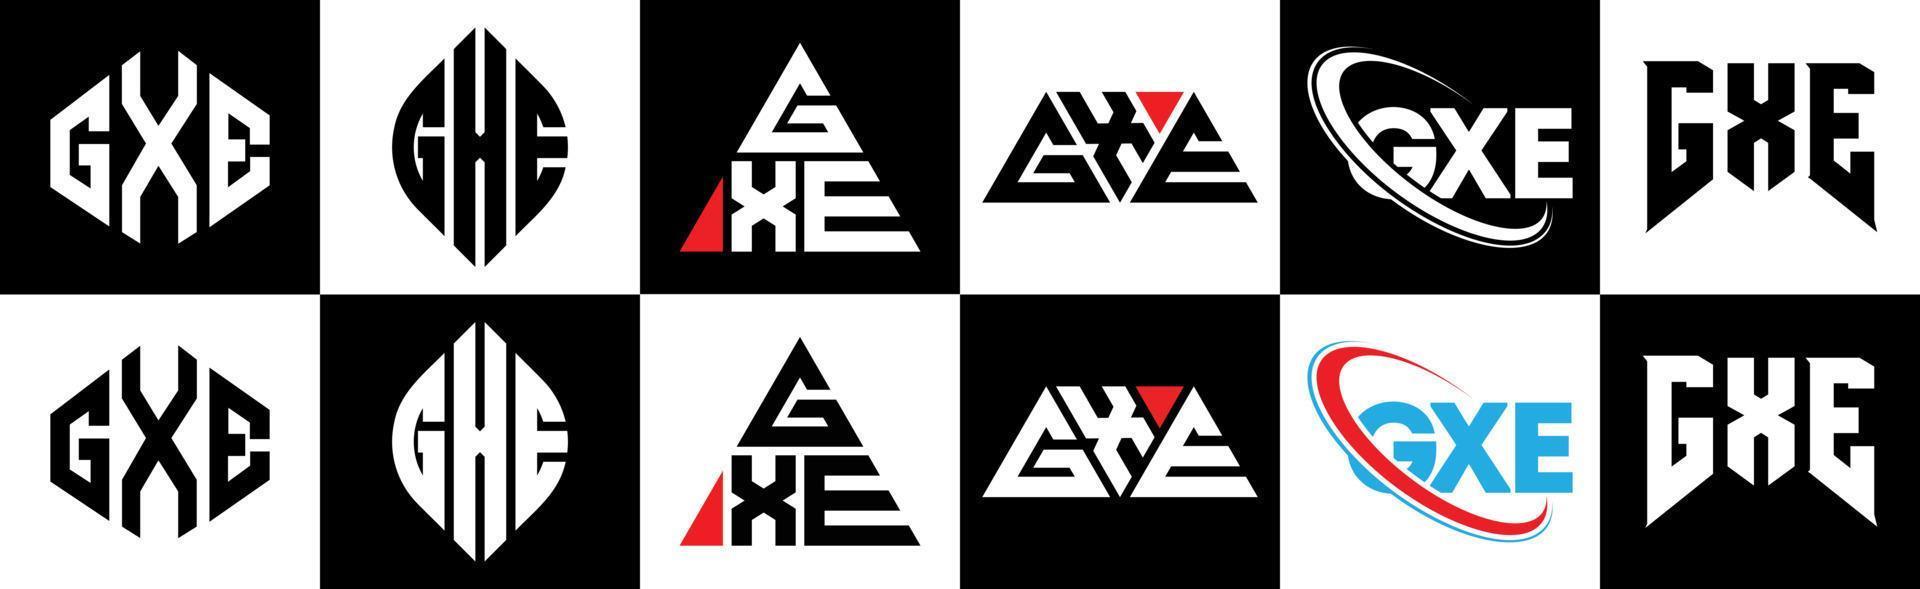 création de logo de lettre gxe en six styles. gxe polygone, cercle, triangle, hexagone, style plat et simple avec logo de lettre de variation de couleur noir et blanc dans un plan de travail. logo minimaliste et classique gxe vecteur